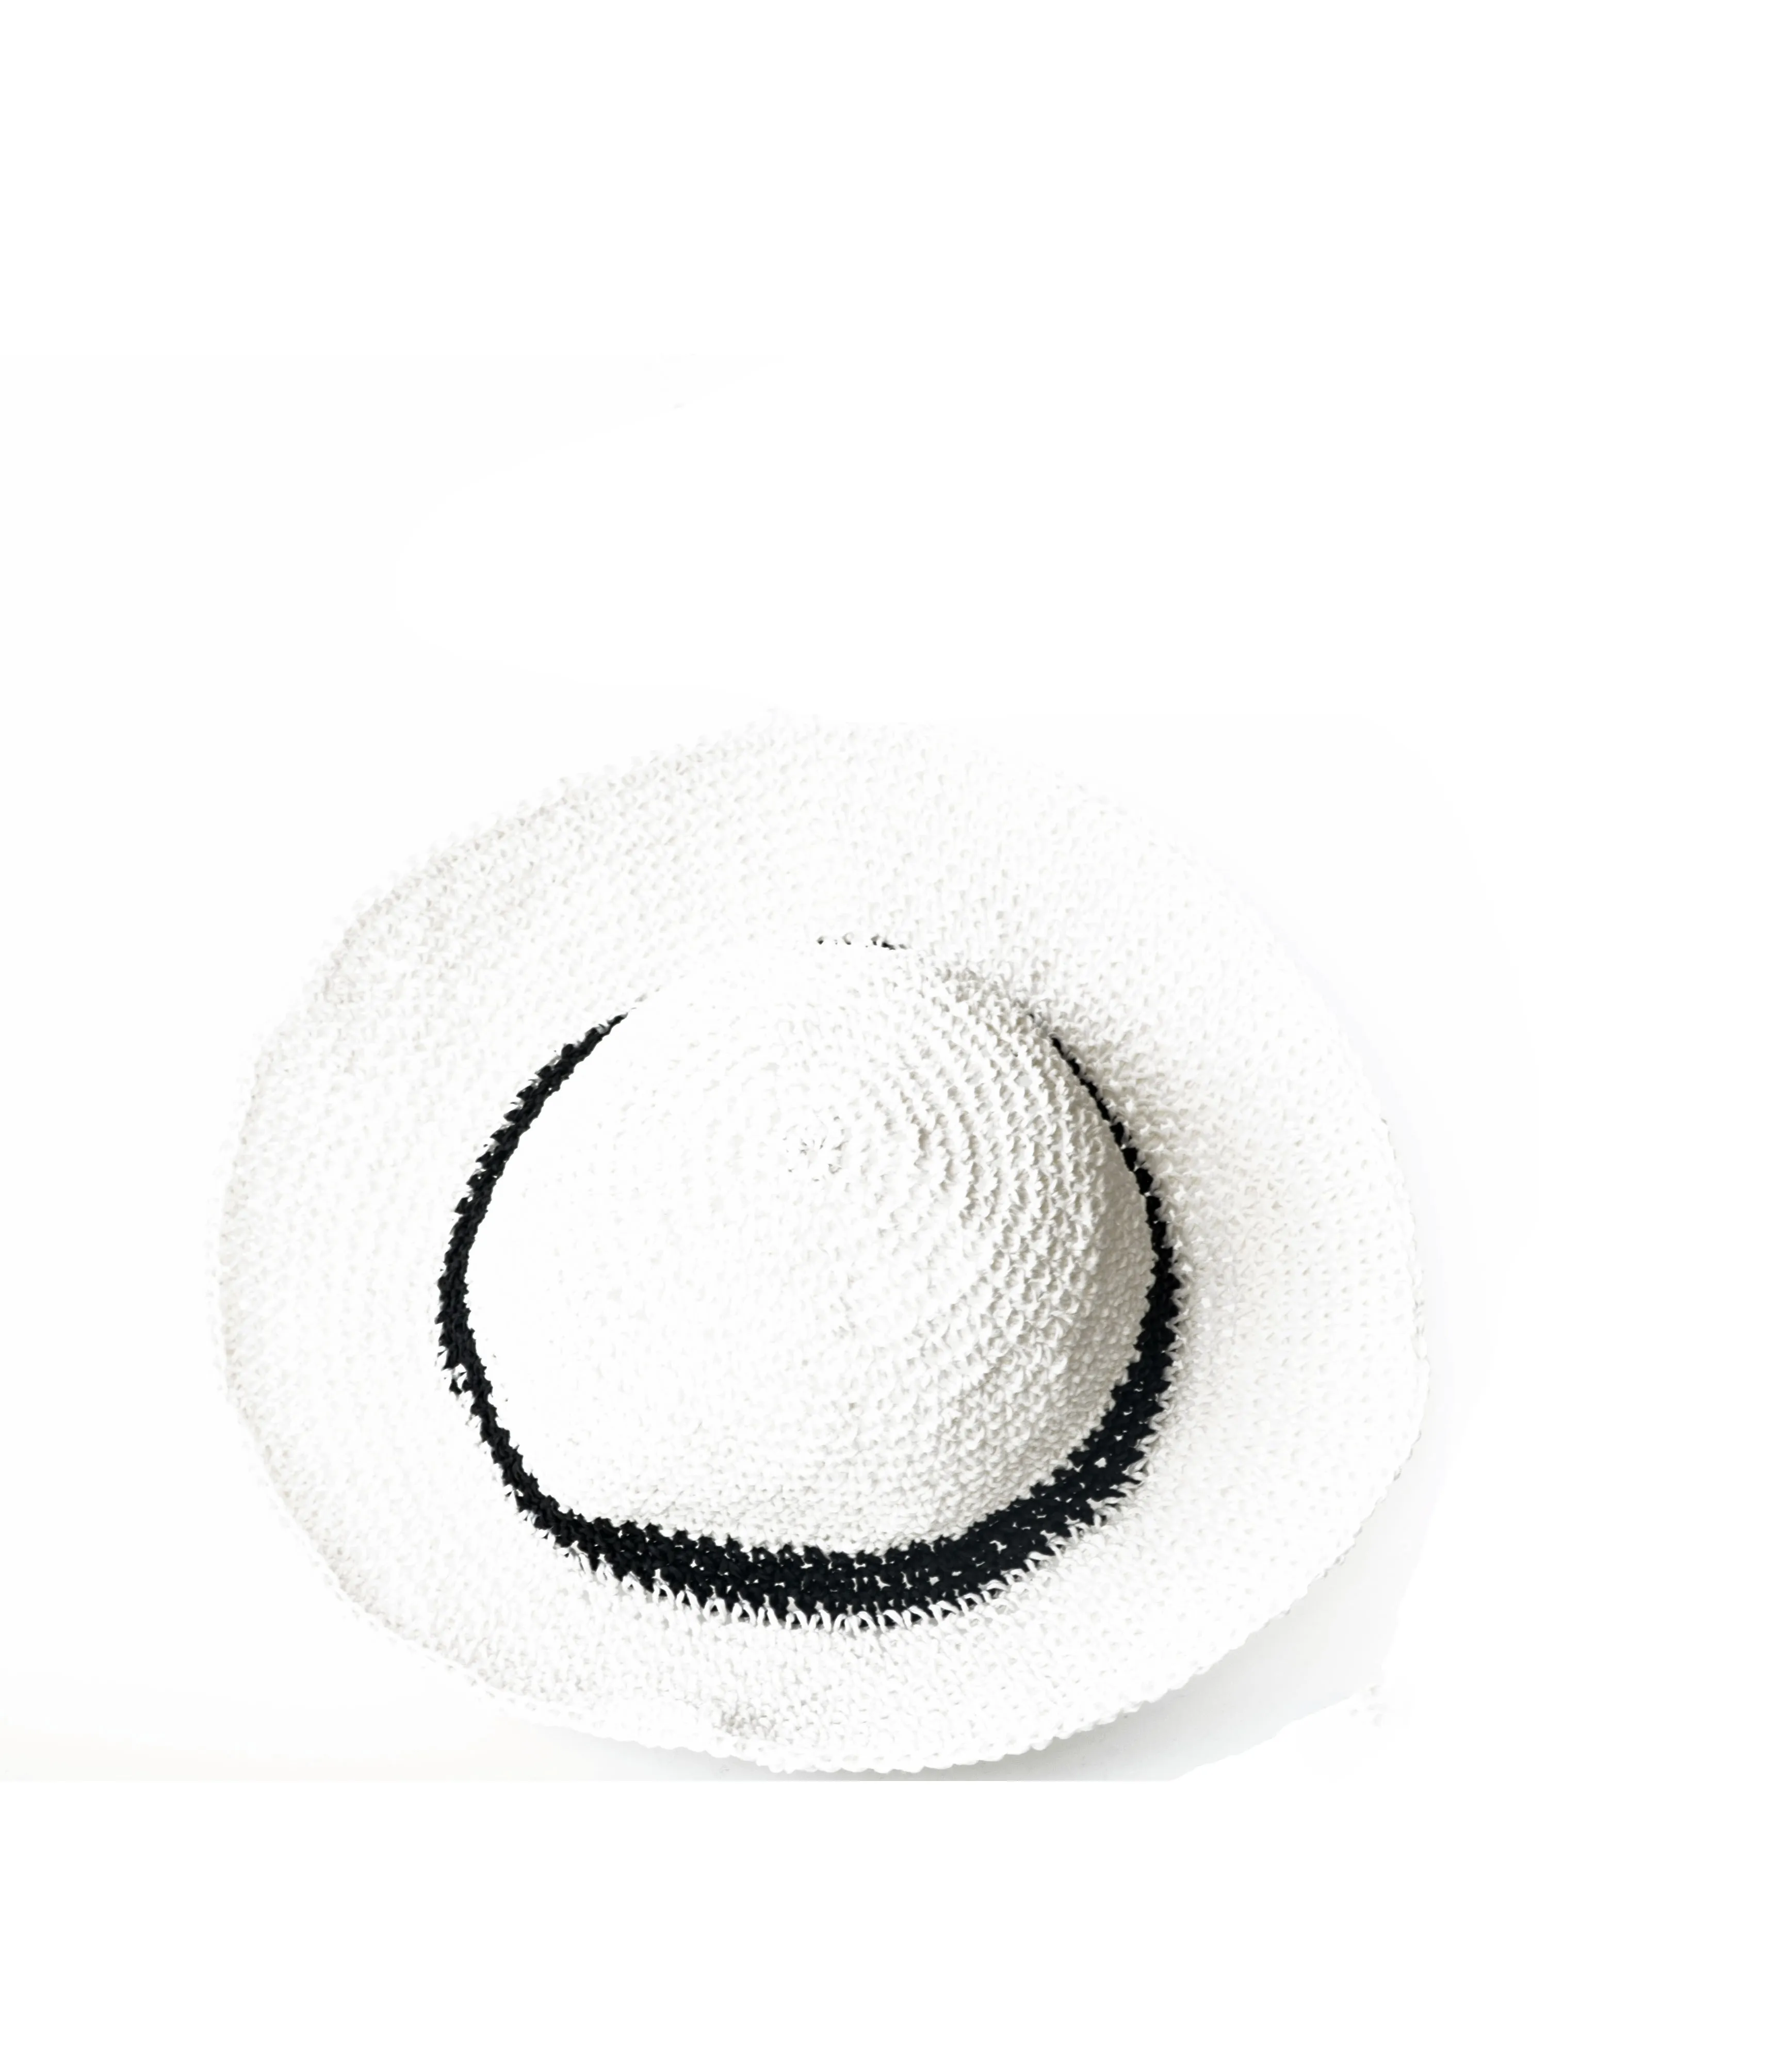 Шляпа женская Соломенная с широкими полями, Солнцезащитная пляжная шапка, чёрная и белая, модель 2021, на лето от AliExpress RU&CIS NEW